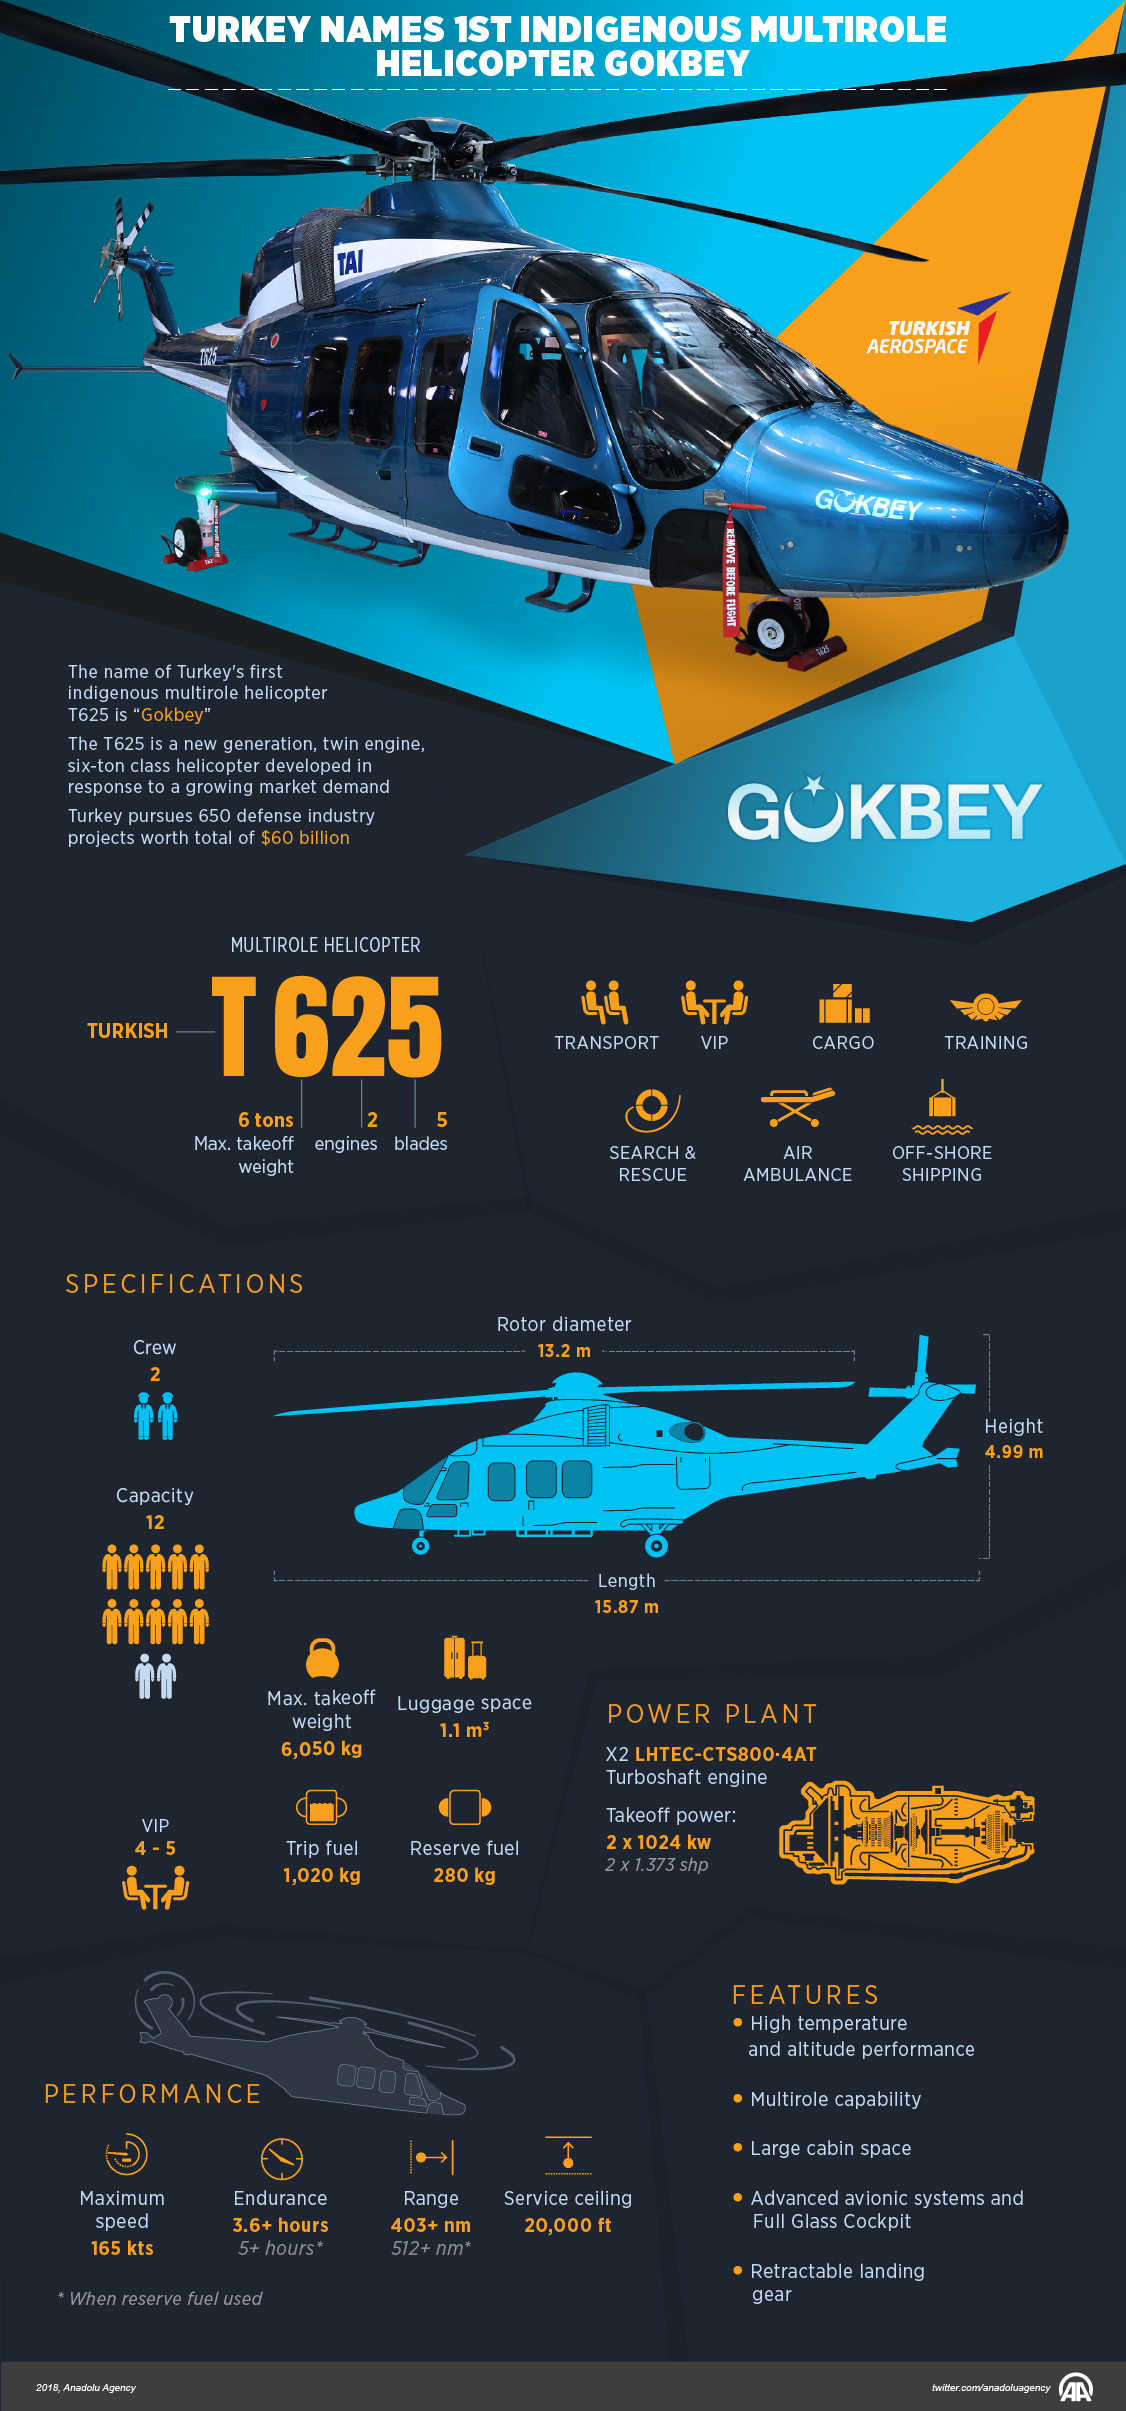 Turkey names 1st indigenous multirole helicopter Gokbey